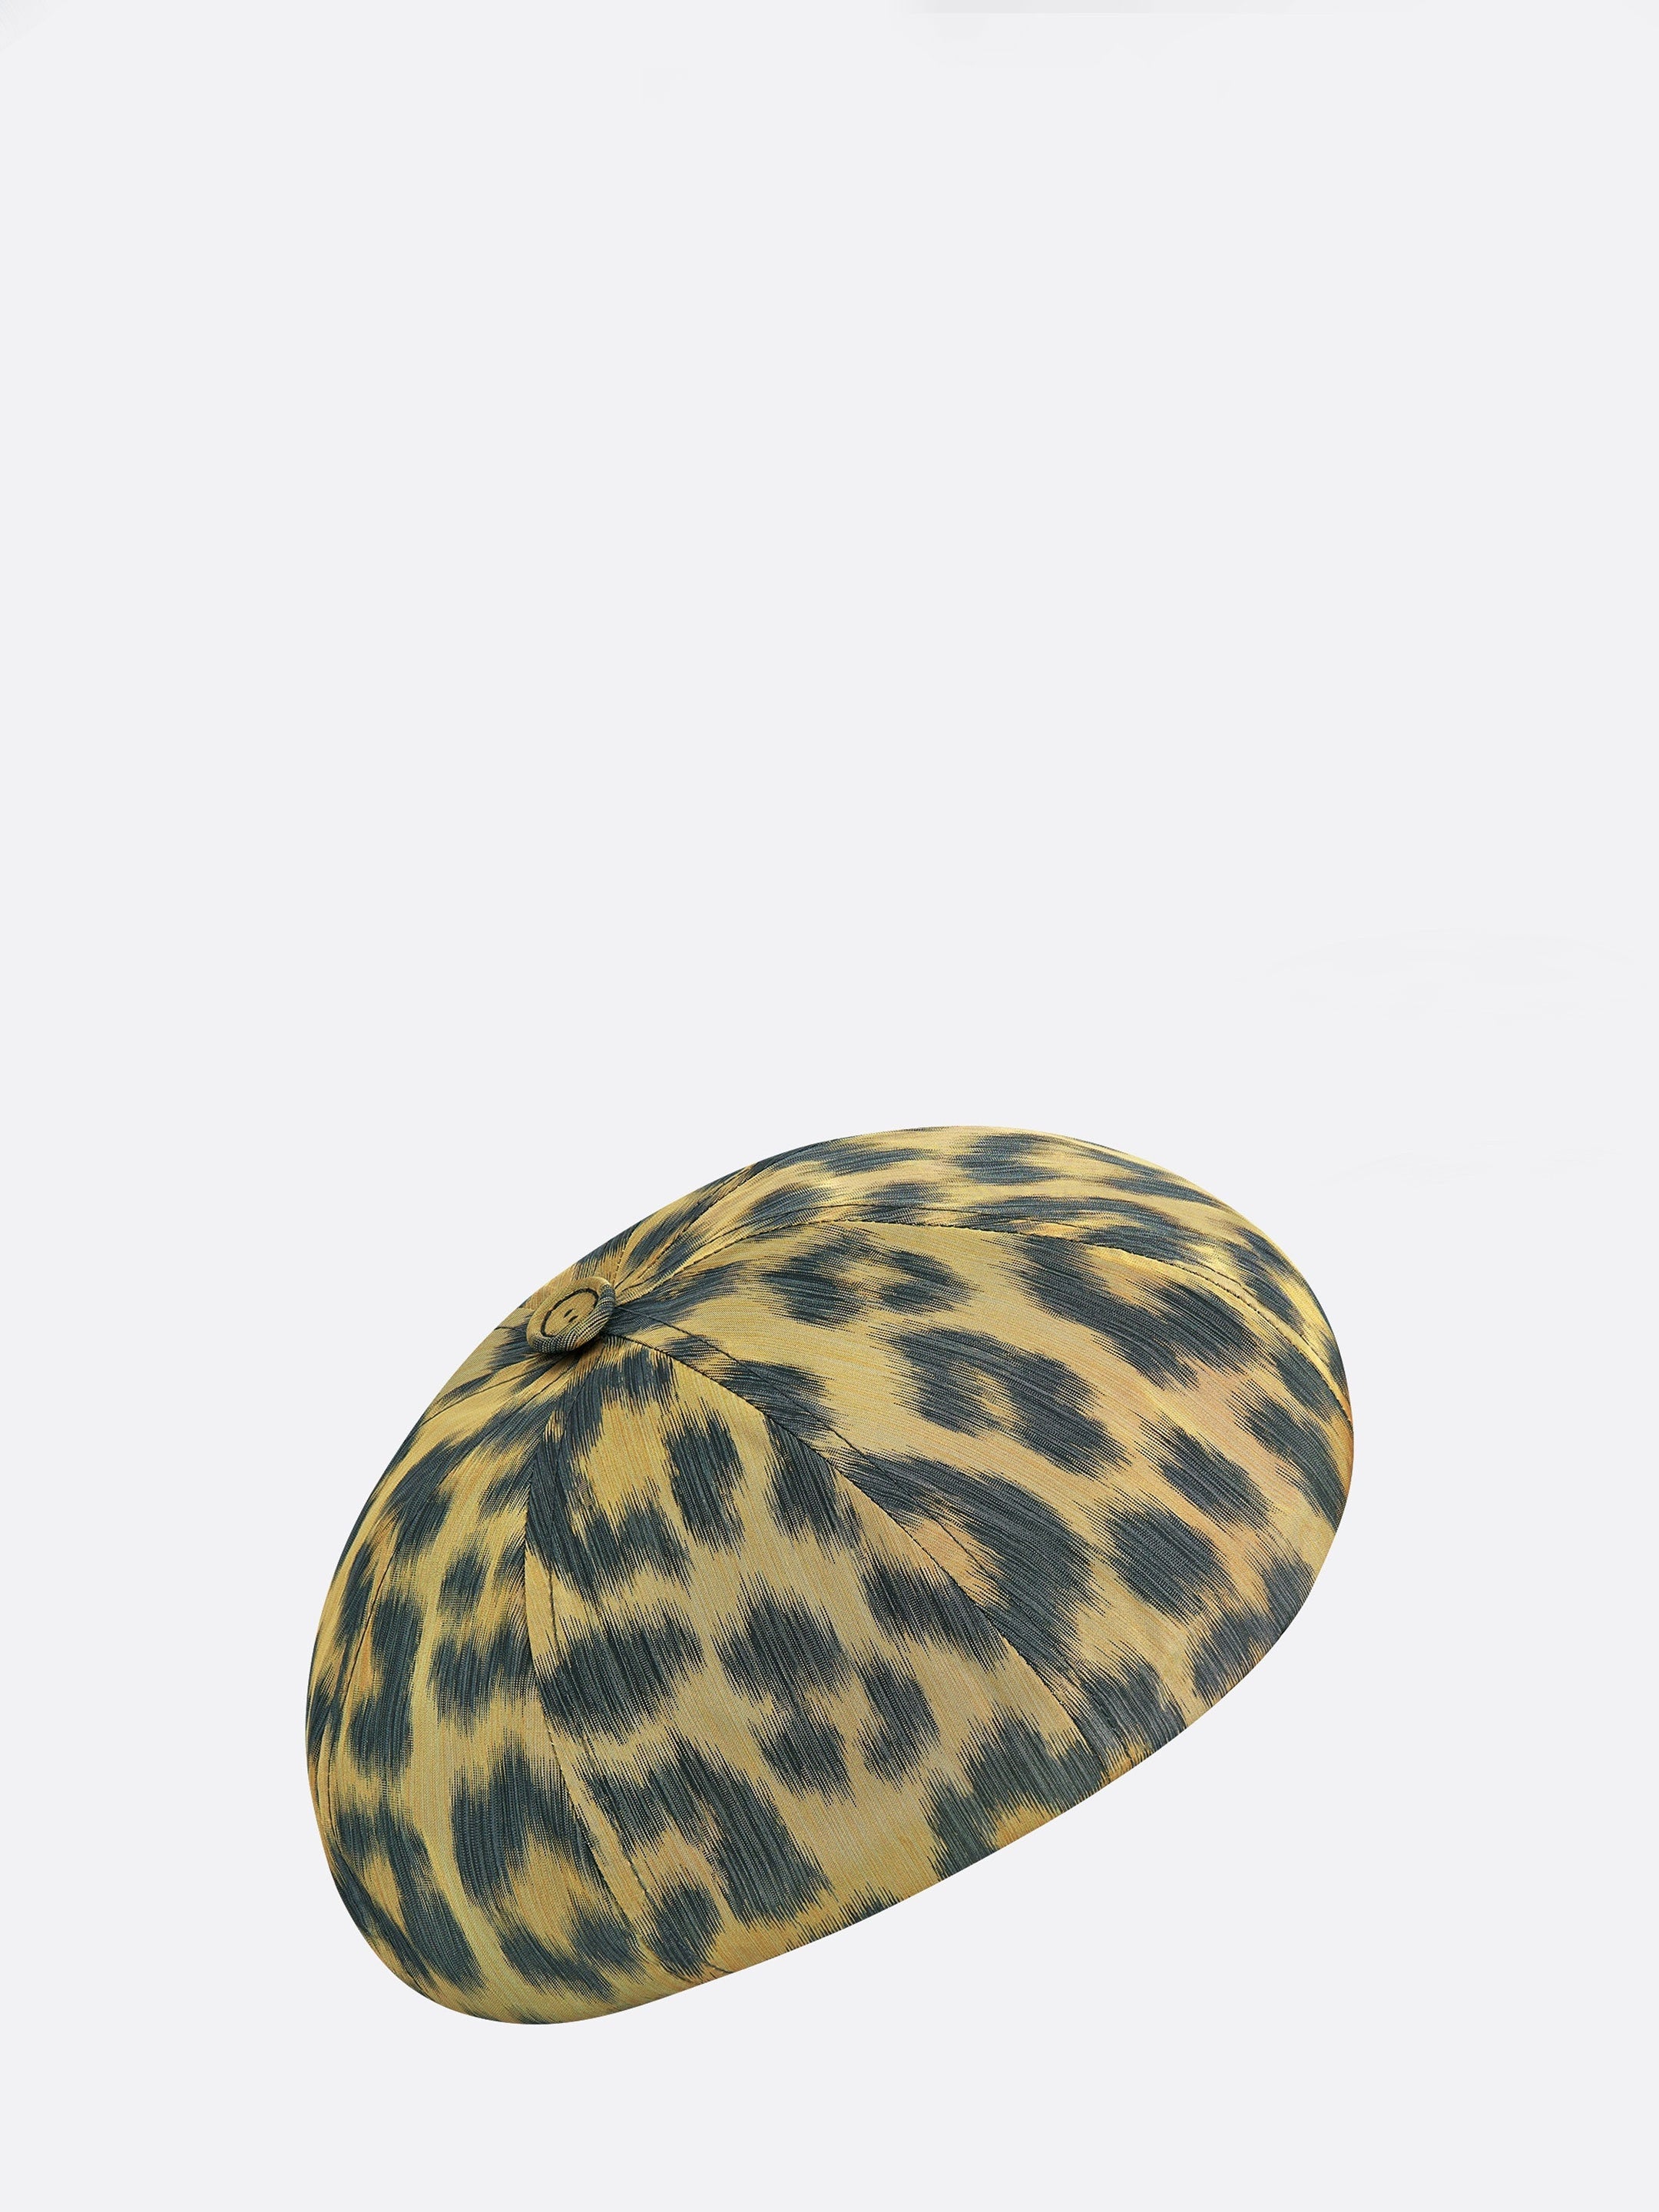 DIOR-HOMME-OUTLET-SALE-Leopard-print-beret-Mutzen-M-BROWN-ARCHIVE-COLLECTION.jpg